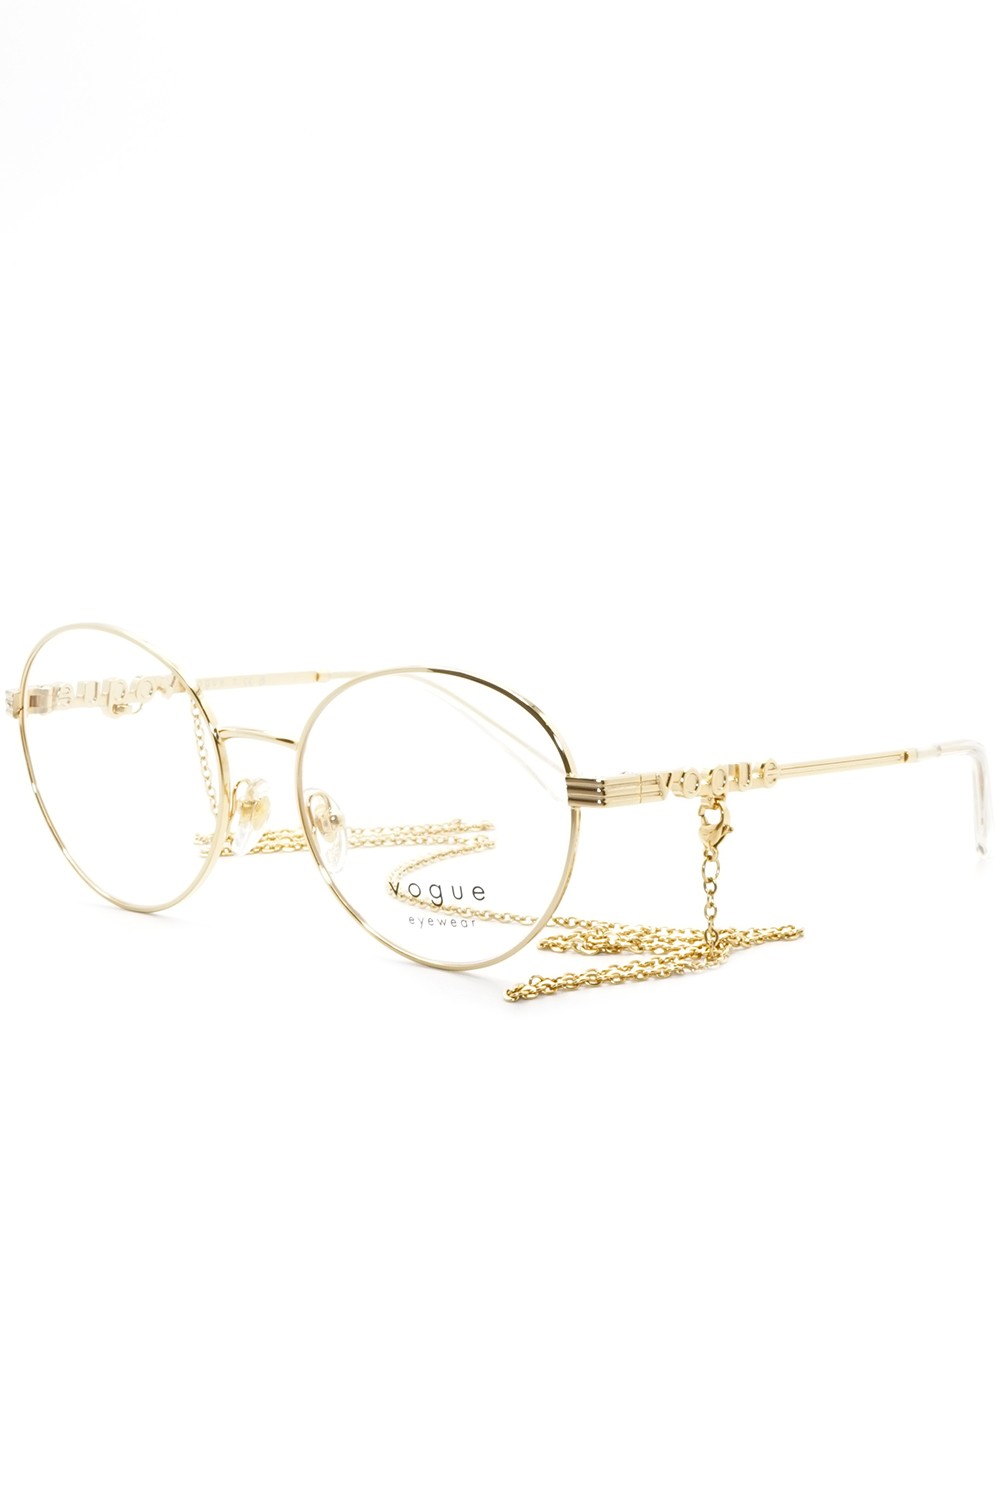 Vogue - Occhiali da vista in metallo tondi per donna oro - VO4222 280